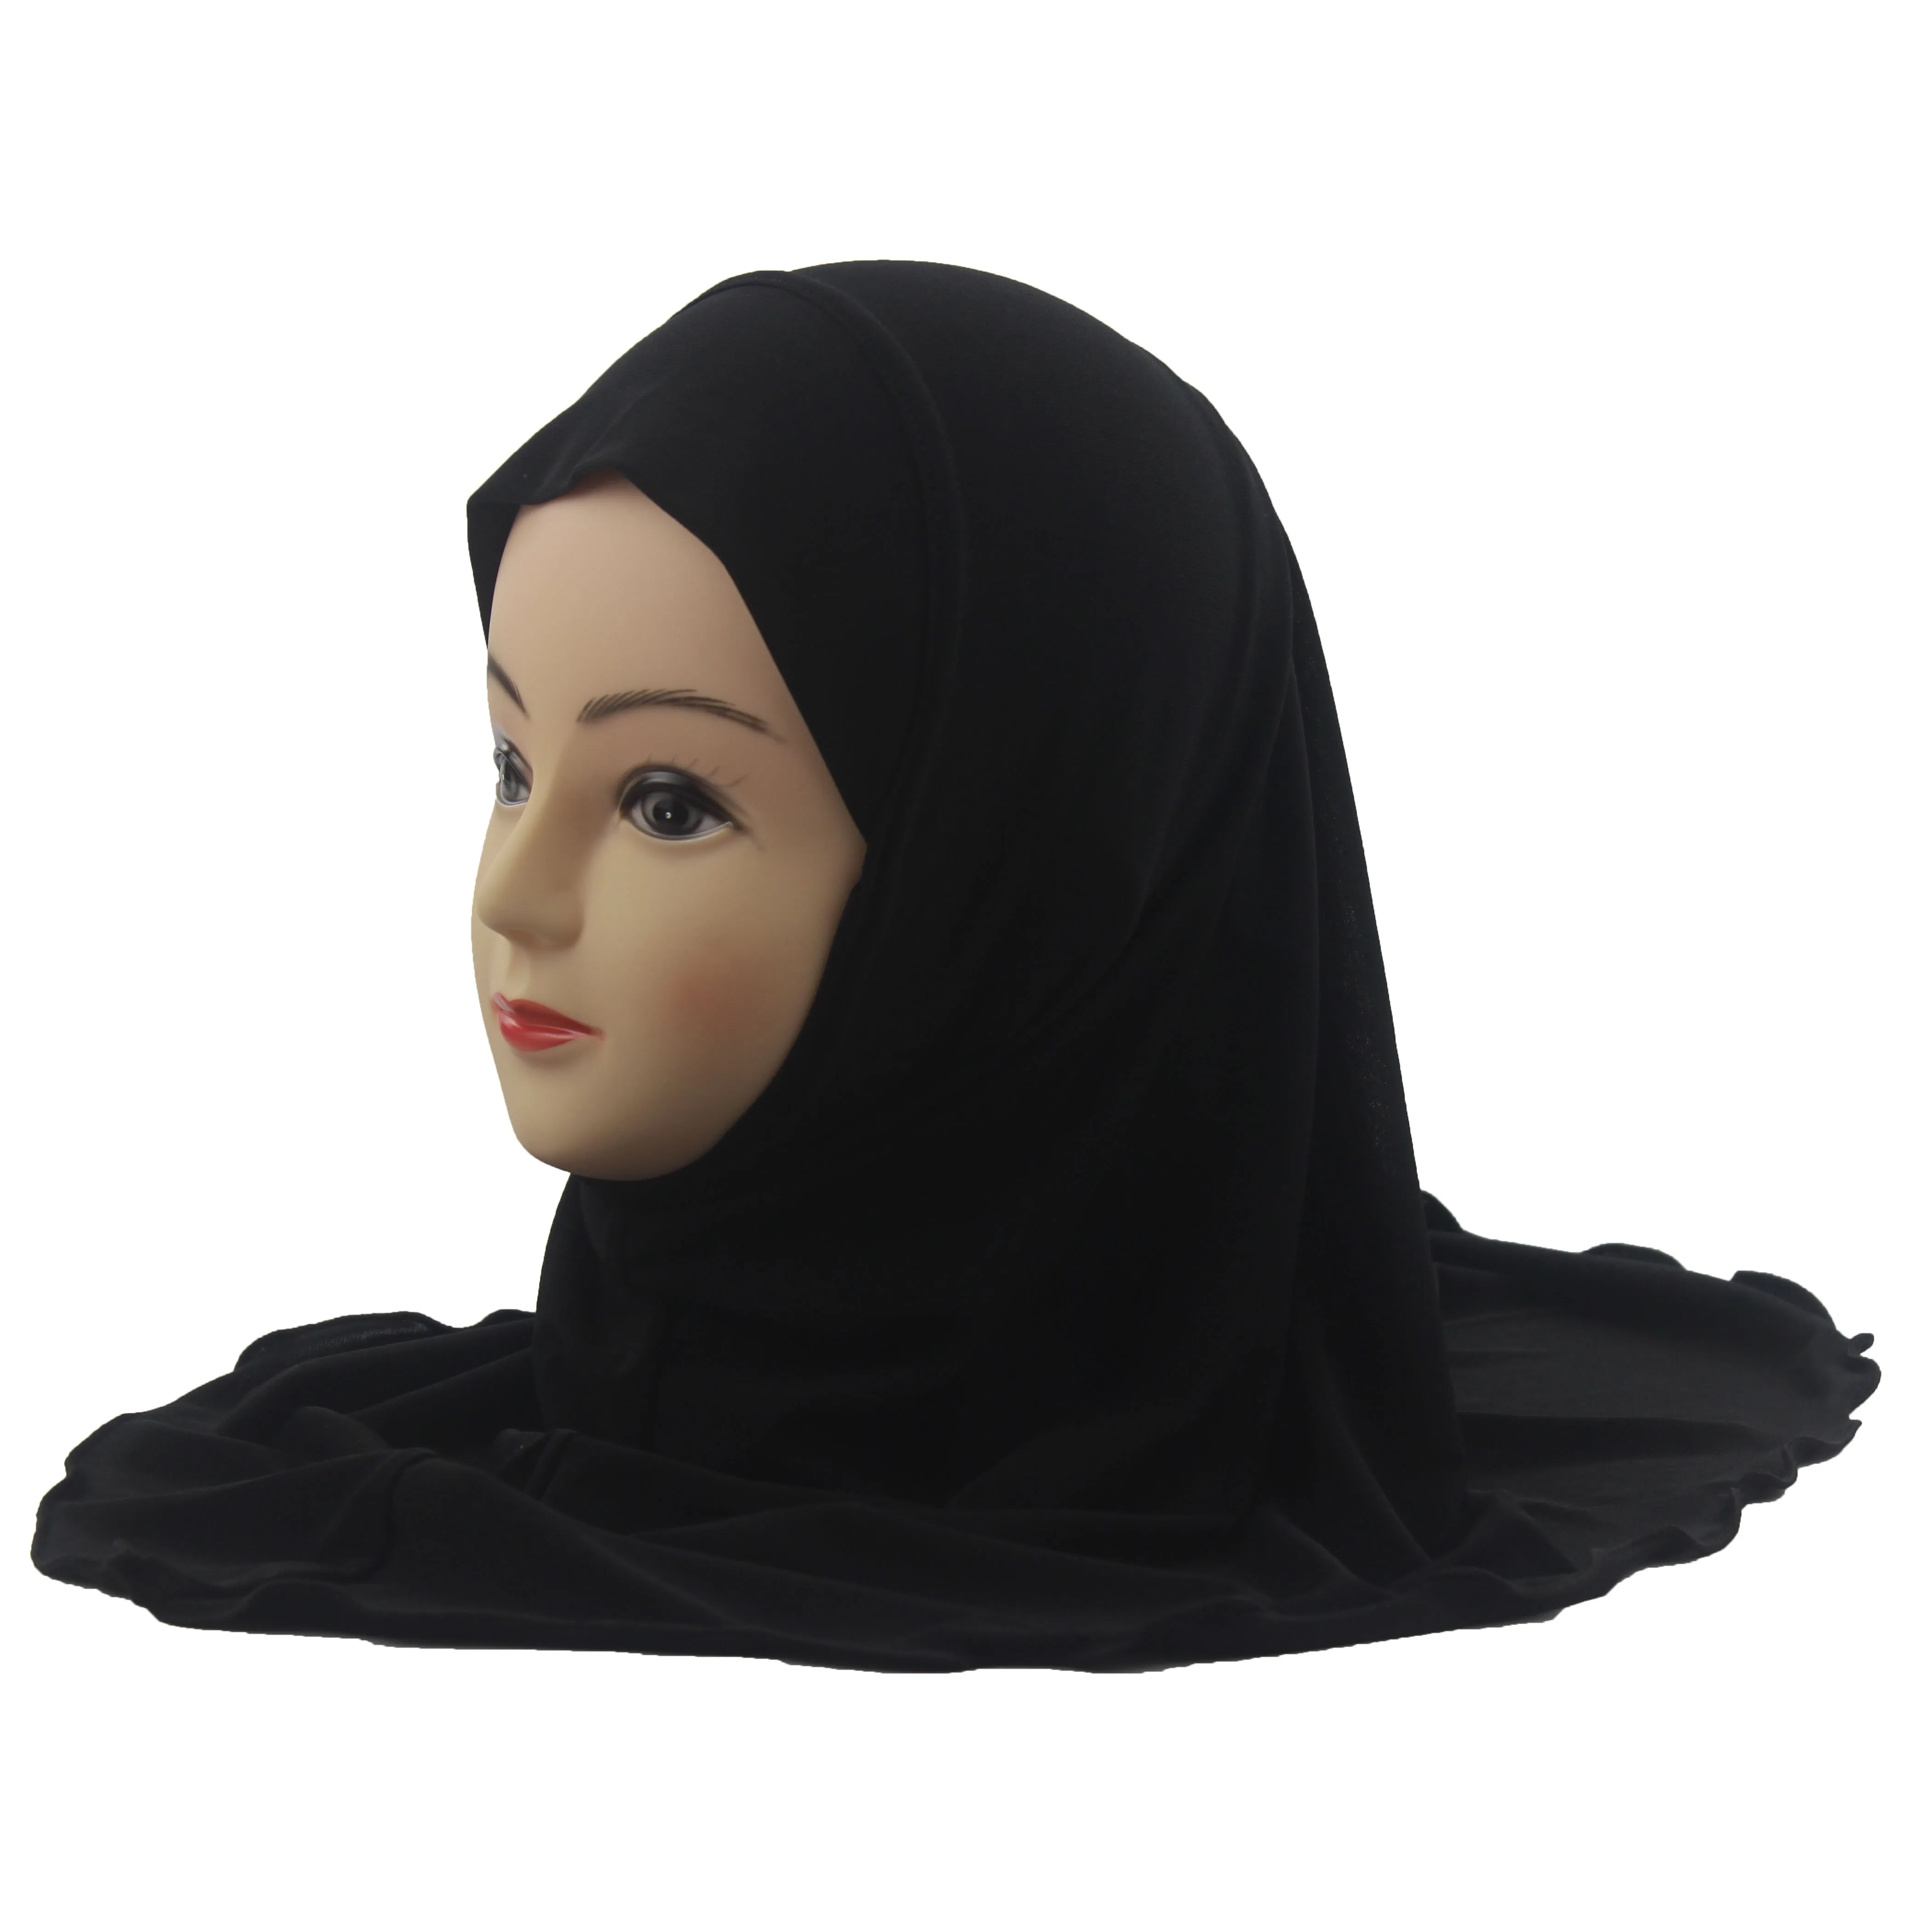 Мусульманский хиджаб для детей, исламский шарф, шали без украшений, мягкий и эластичный материал для девочек 7-12 лет